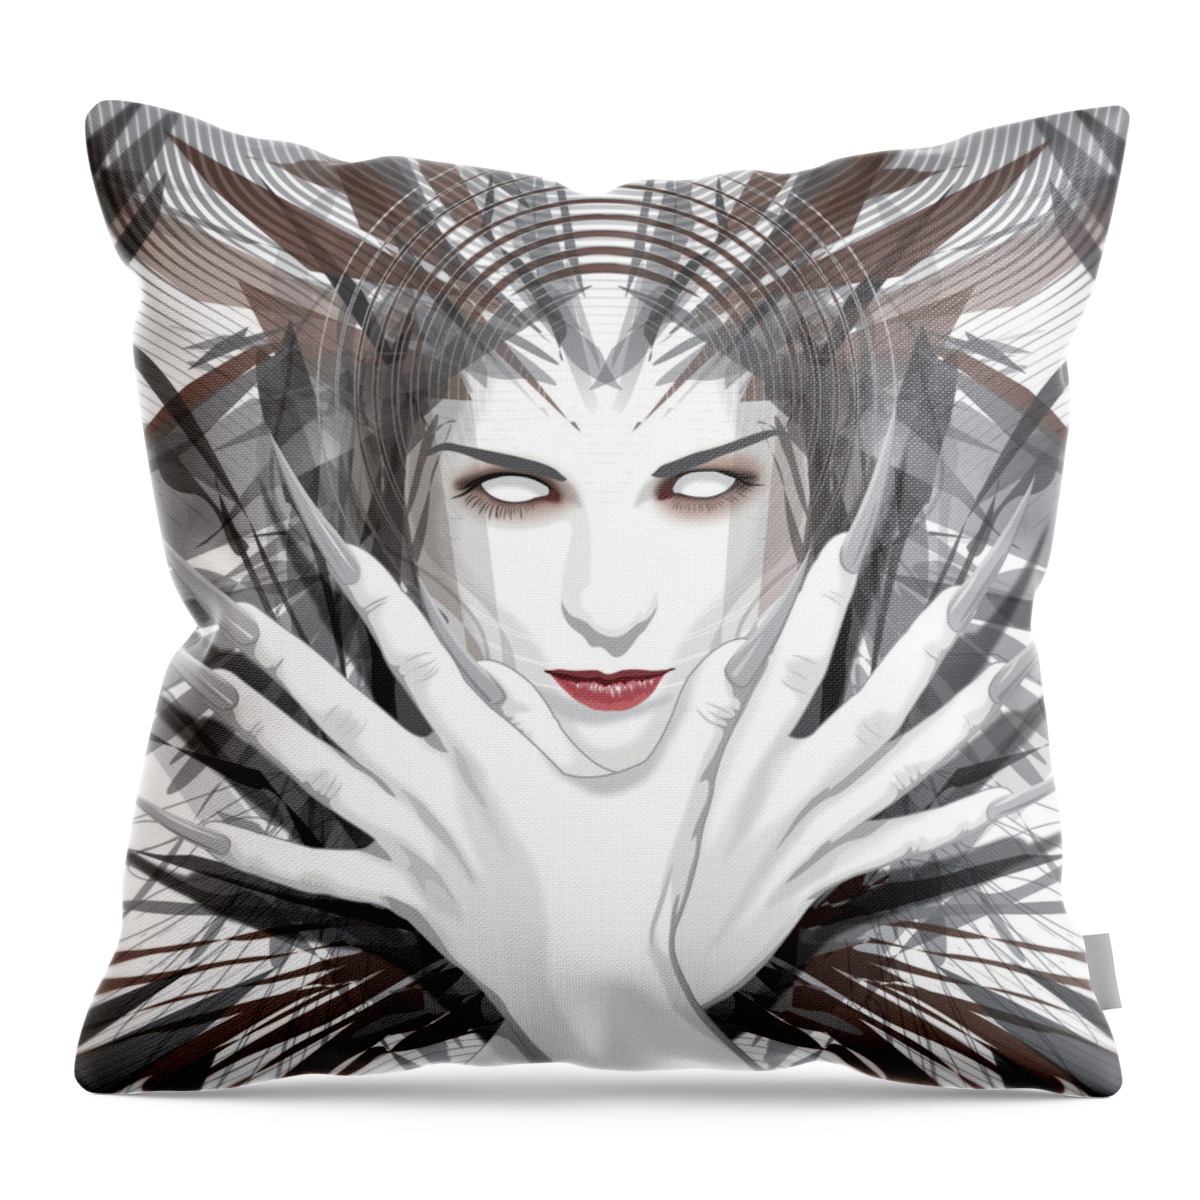 Jason Casteel Throw Pillow featuring the digital art Talons by Jason Casteel